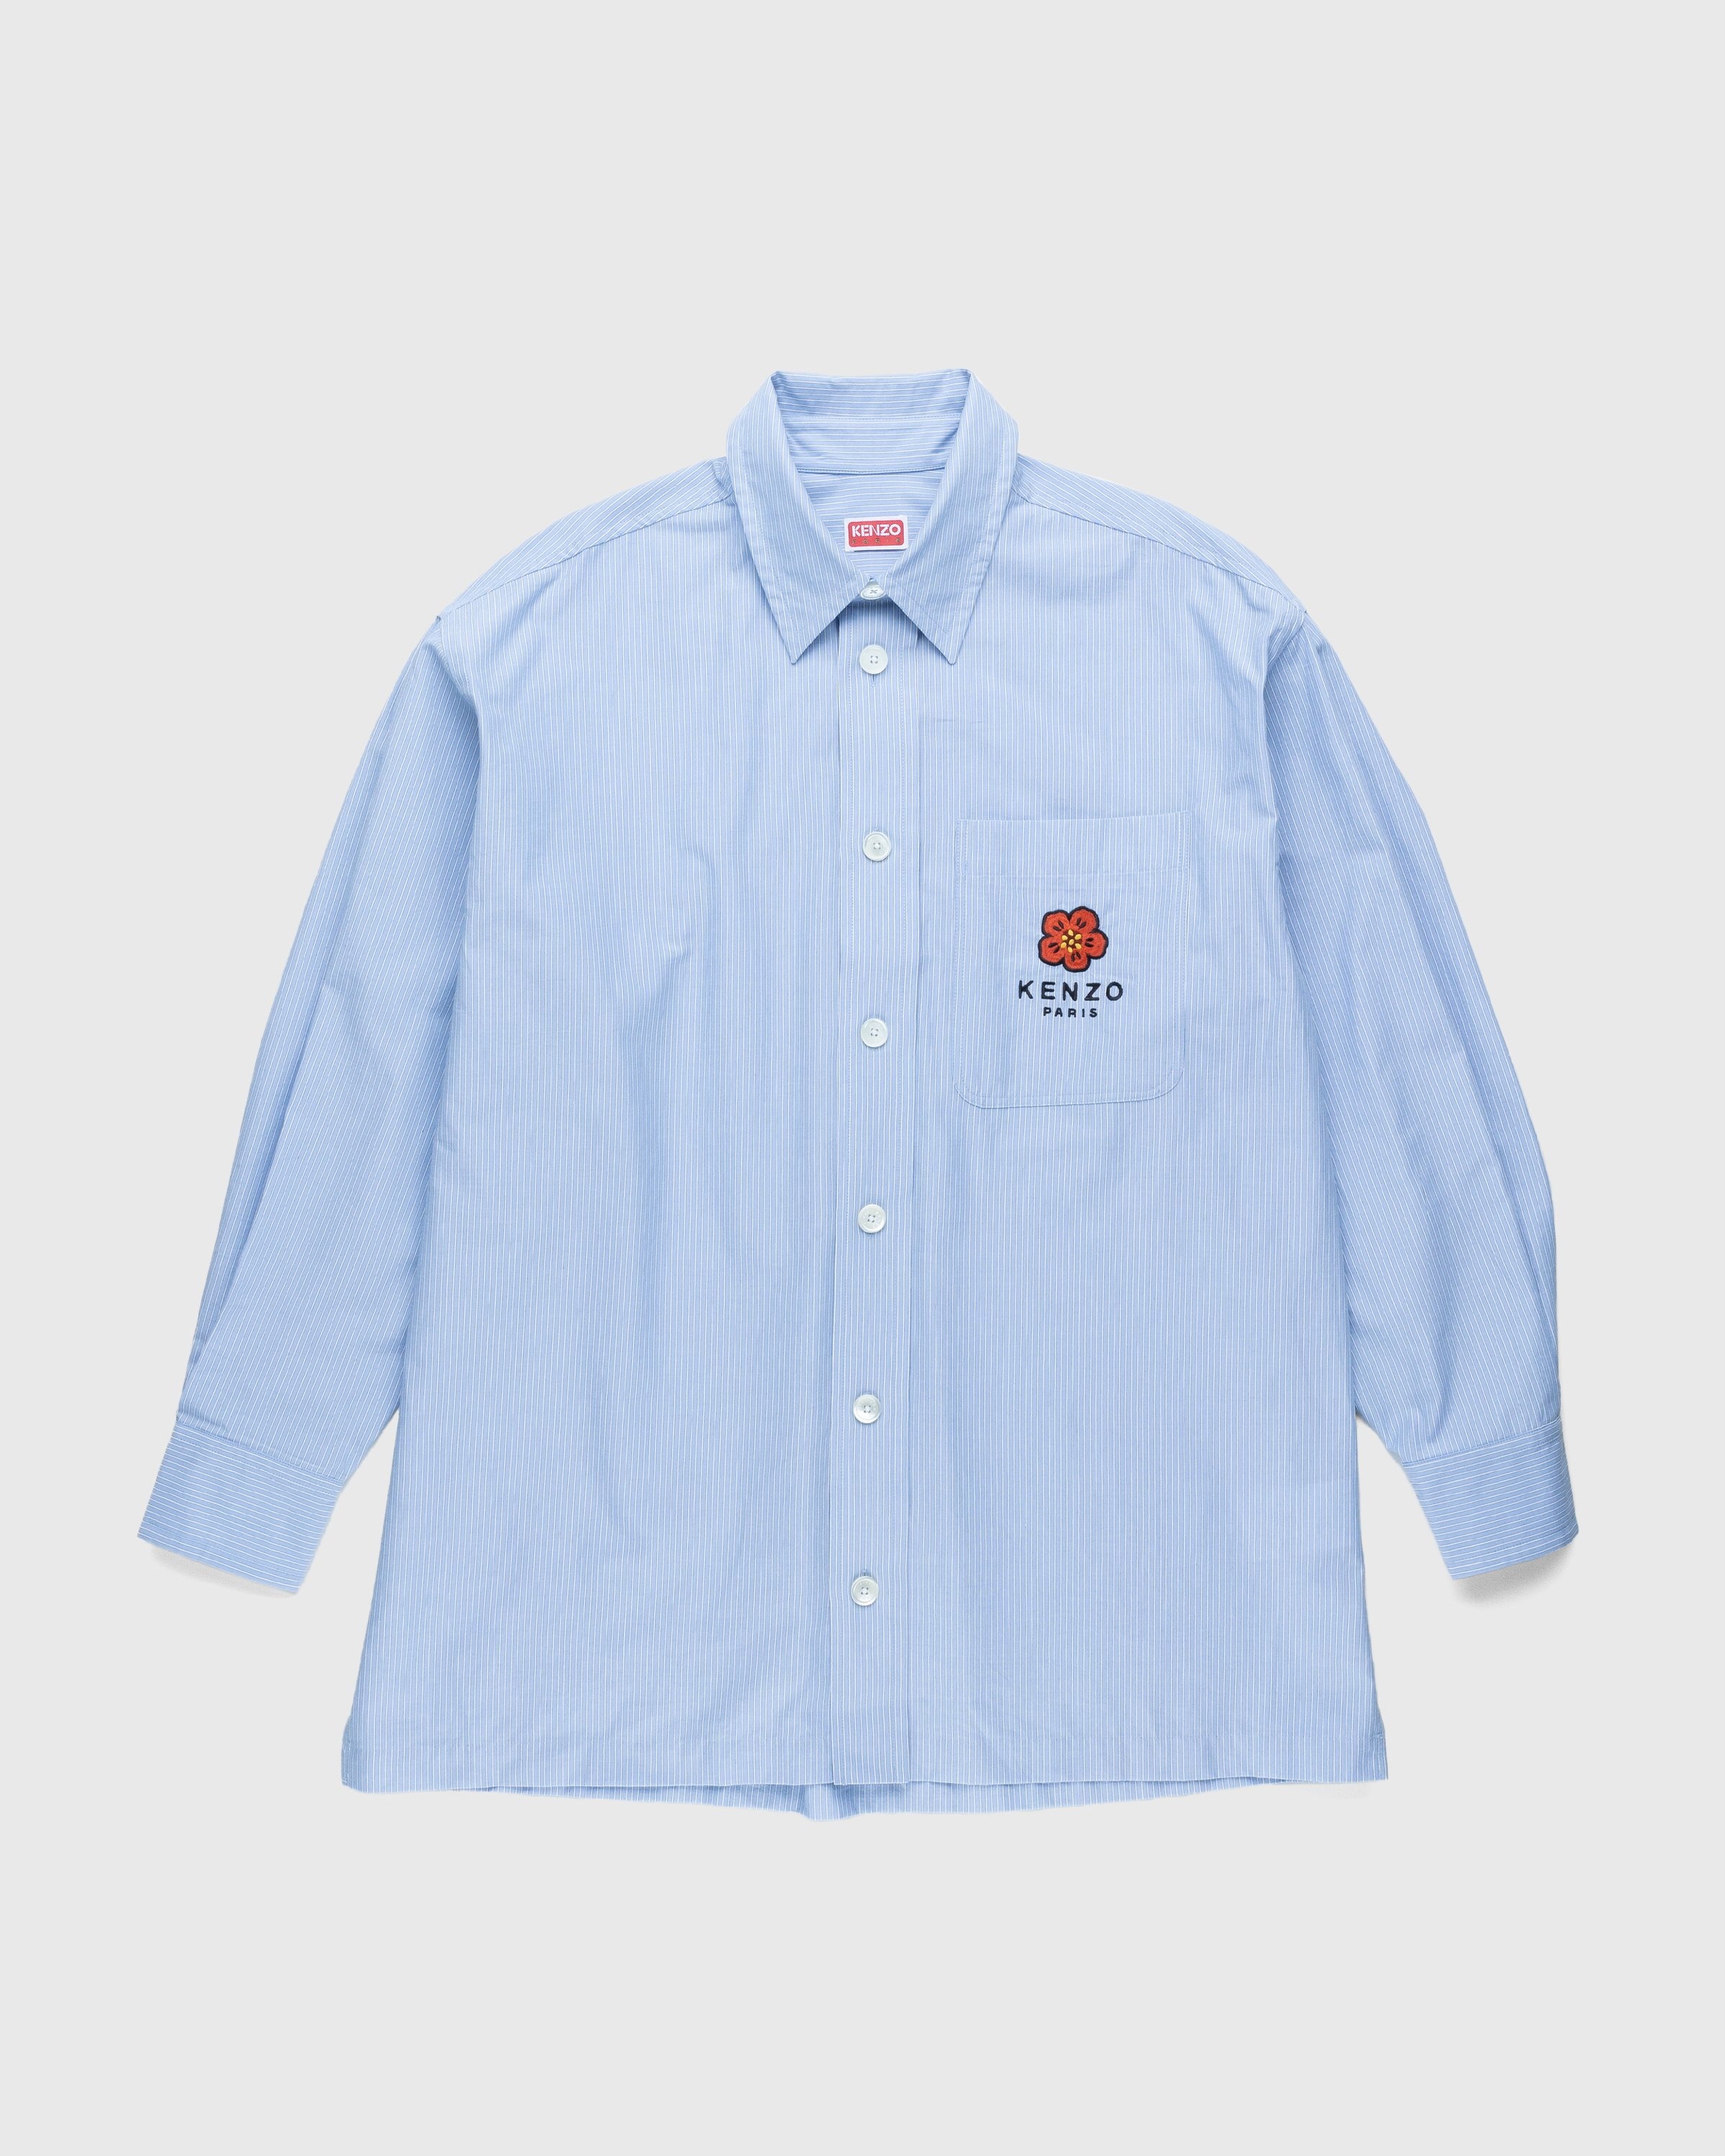 Kenzo – Boke Flower Crest Overshirt Sky Blue - Longsleeve Shirts - Blue - Image 1